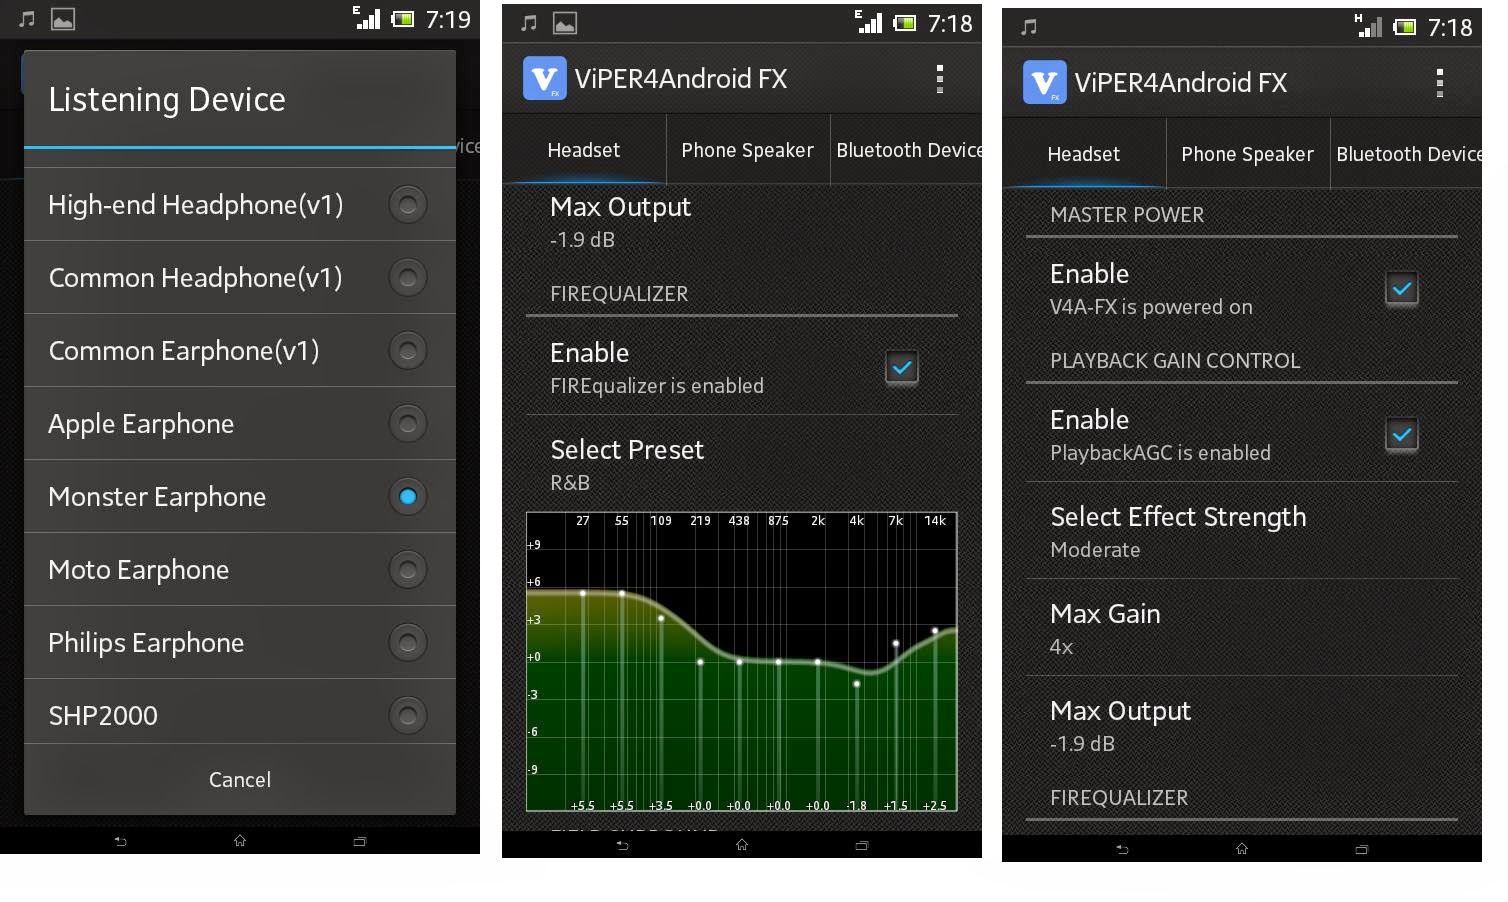 Effect android. Viper4android FX. Viper4android FX изображение. Андроид 4.4. Viper эквалайзер.